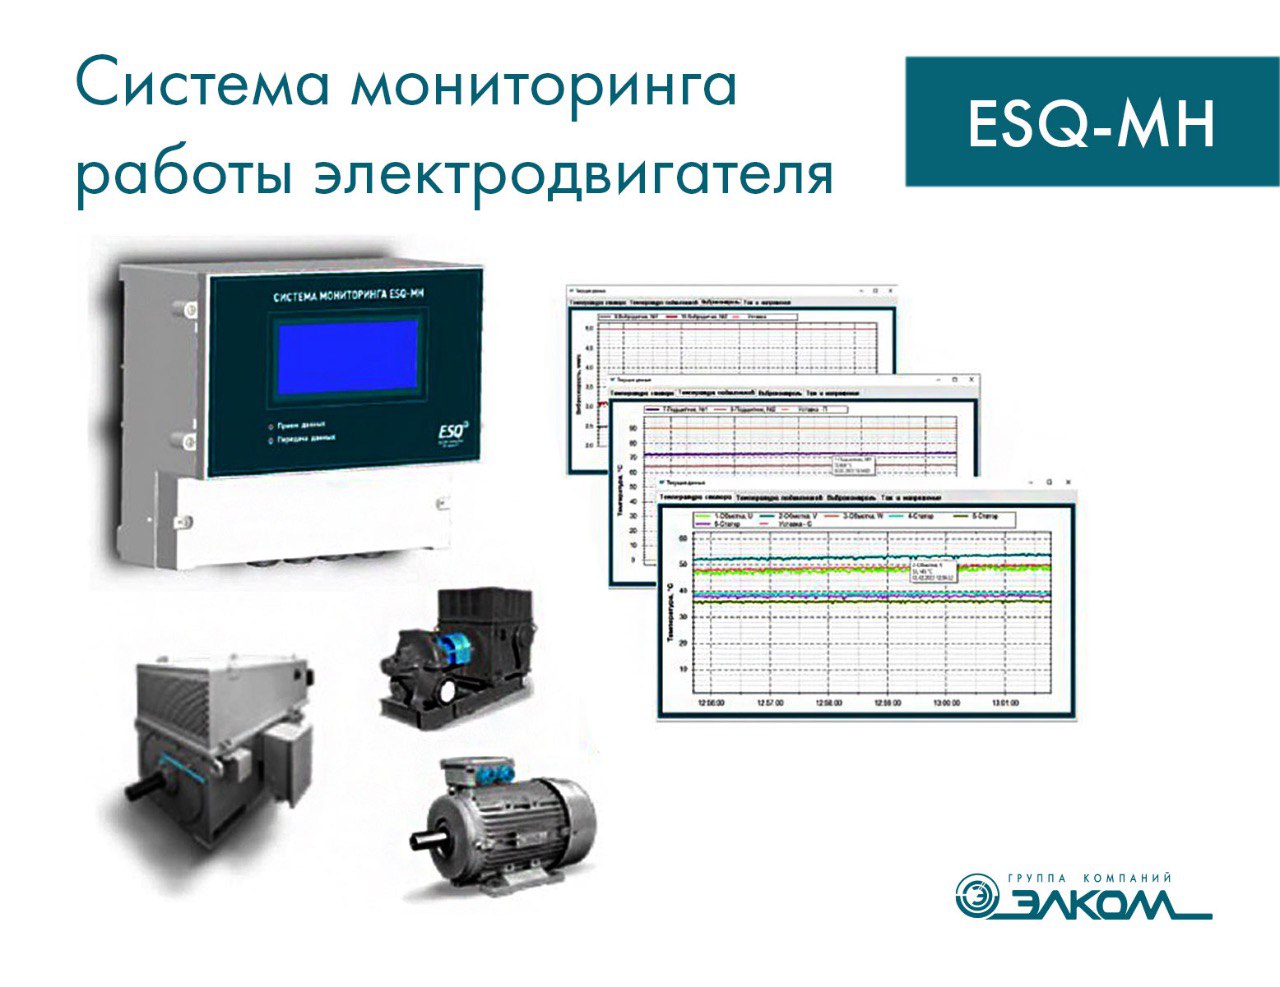 Система мониторинга работы электродвигателя ESQ-MH